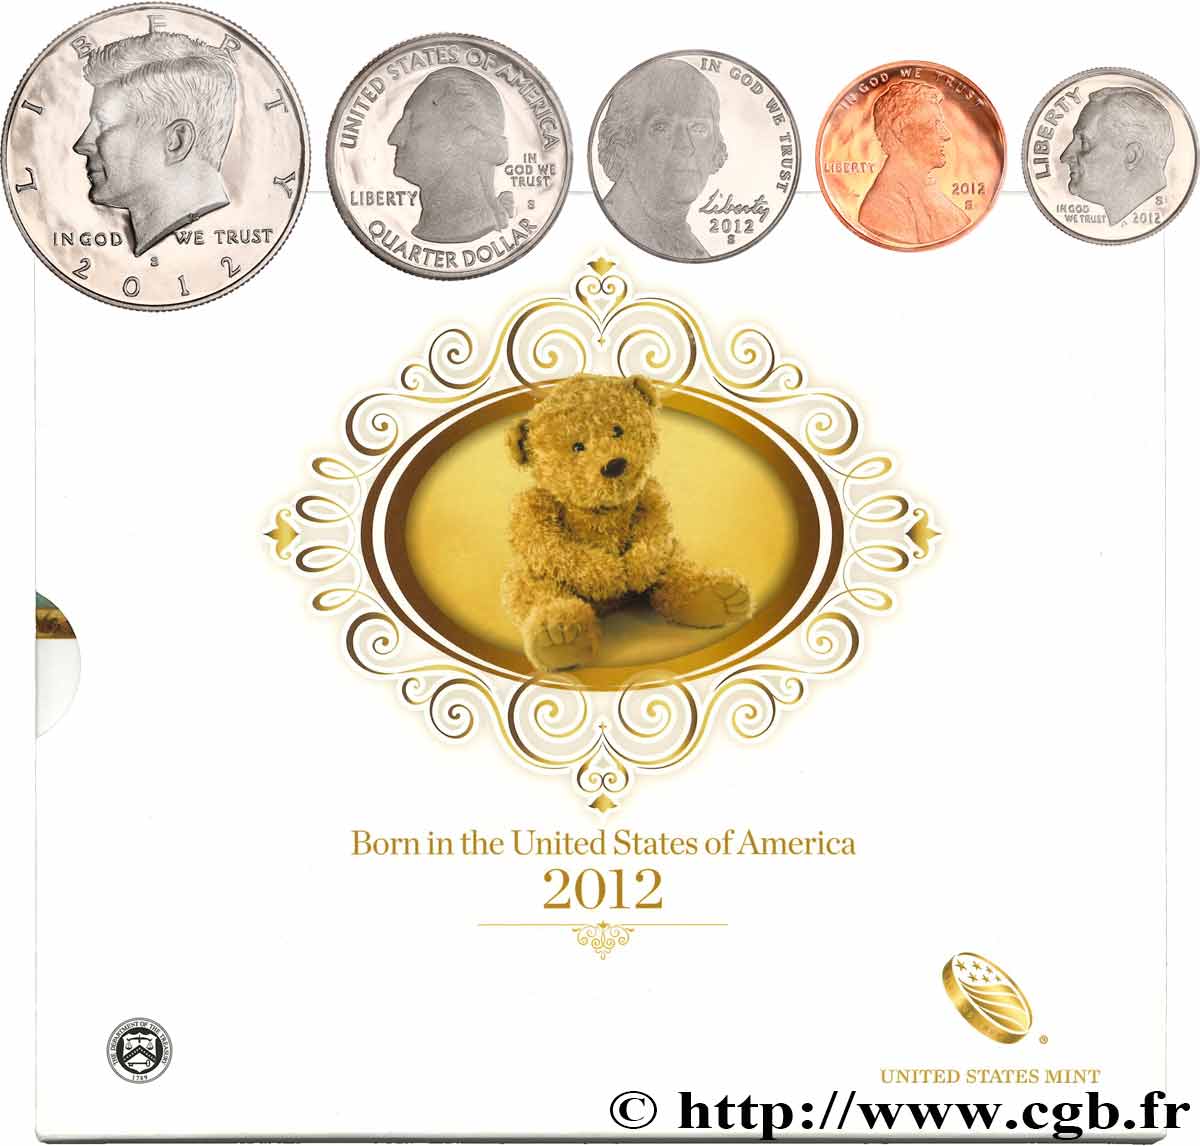 ÉTATS-UNIS D AMÉRIQUE BORN IN THE USA COIN SET - PROOF - 5 monnaies 2012 S- San Francisco FDC 